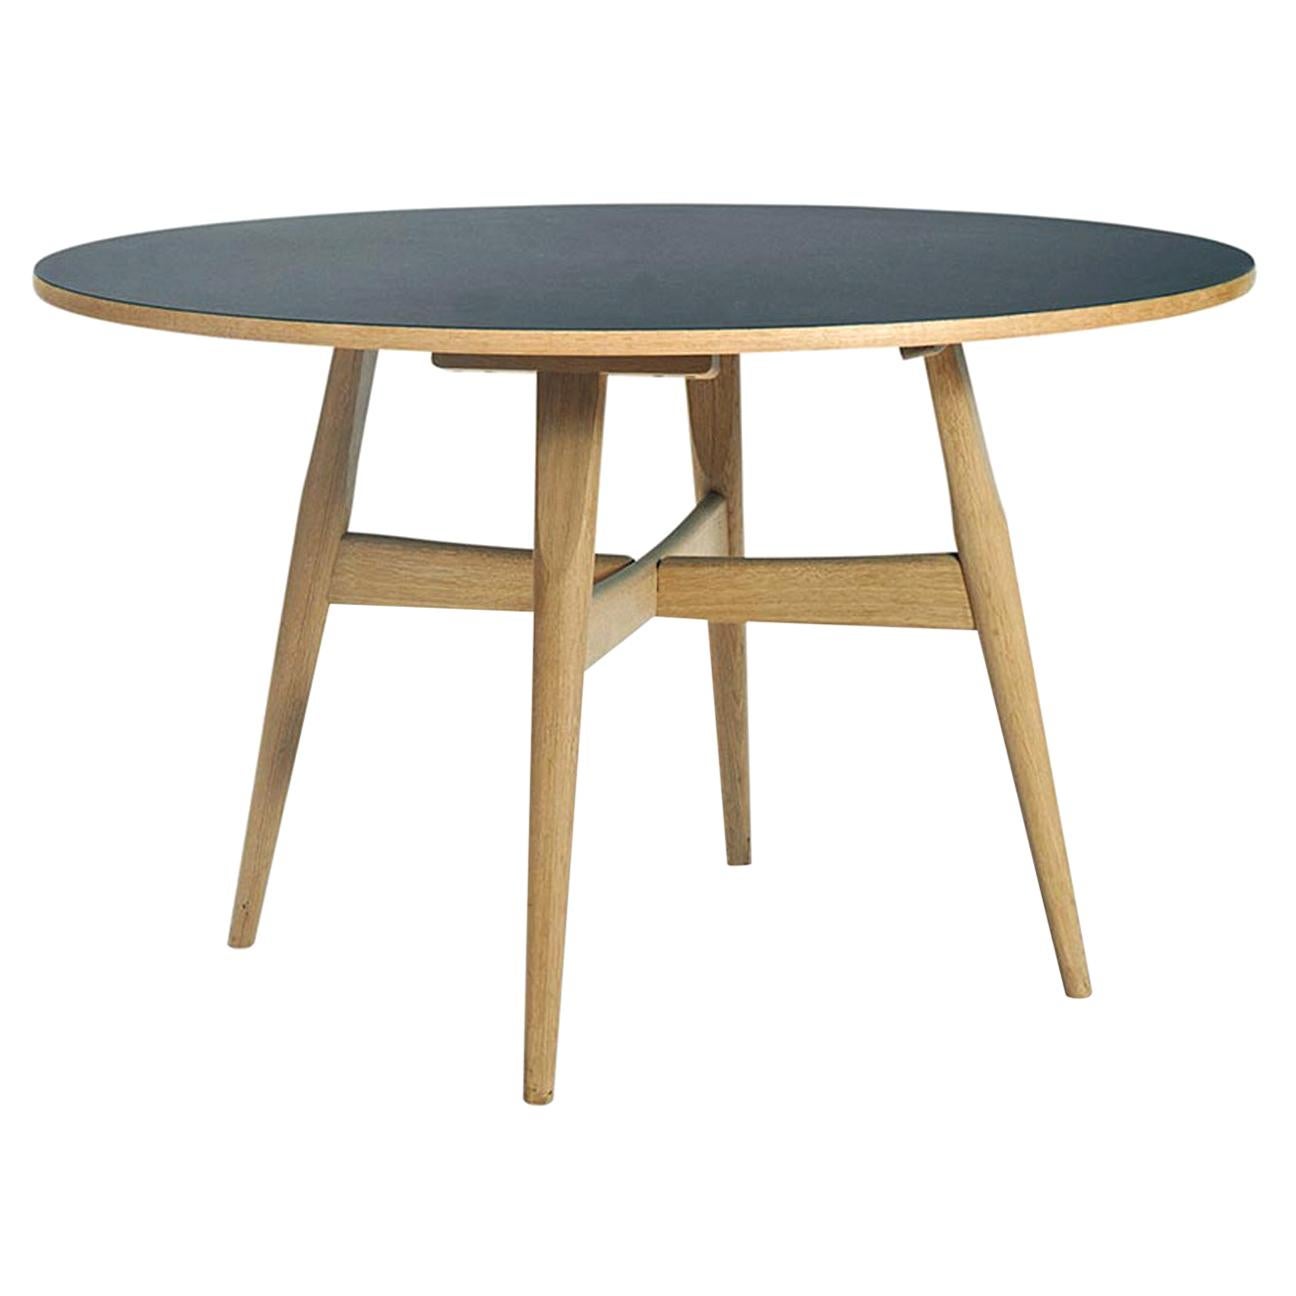 Hans Wegner GE-526 Dining Table, Veneered Table Top in Oak with Legs in Beech